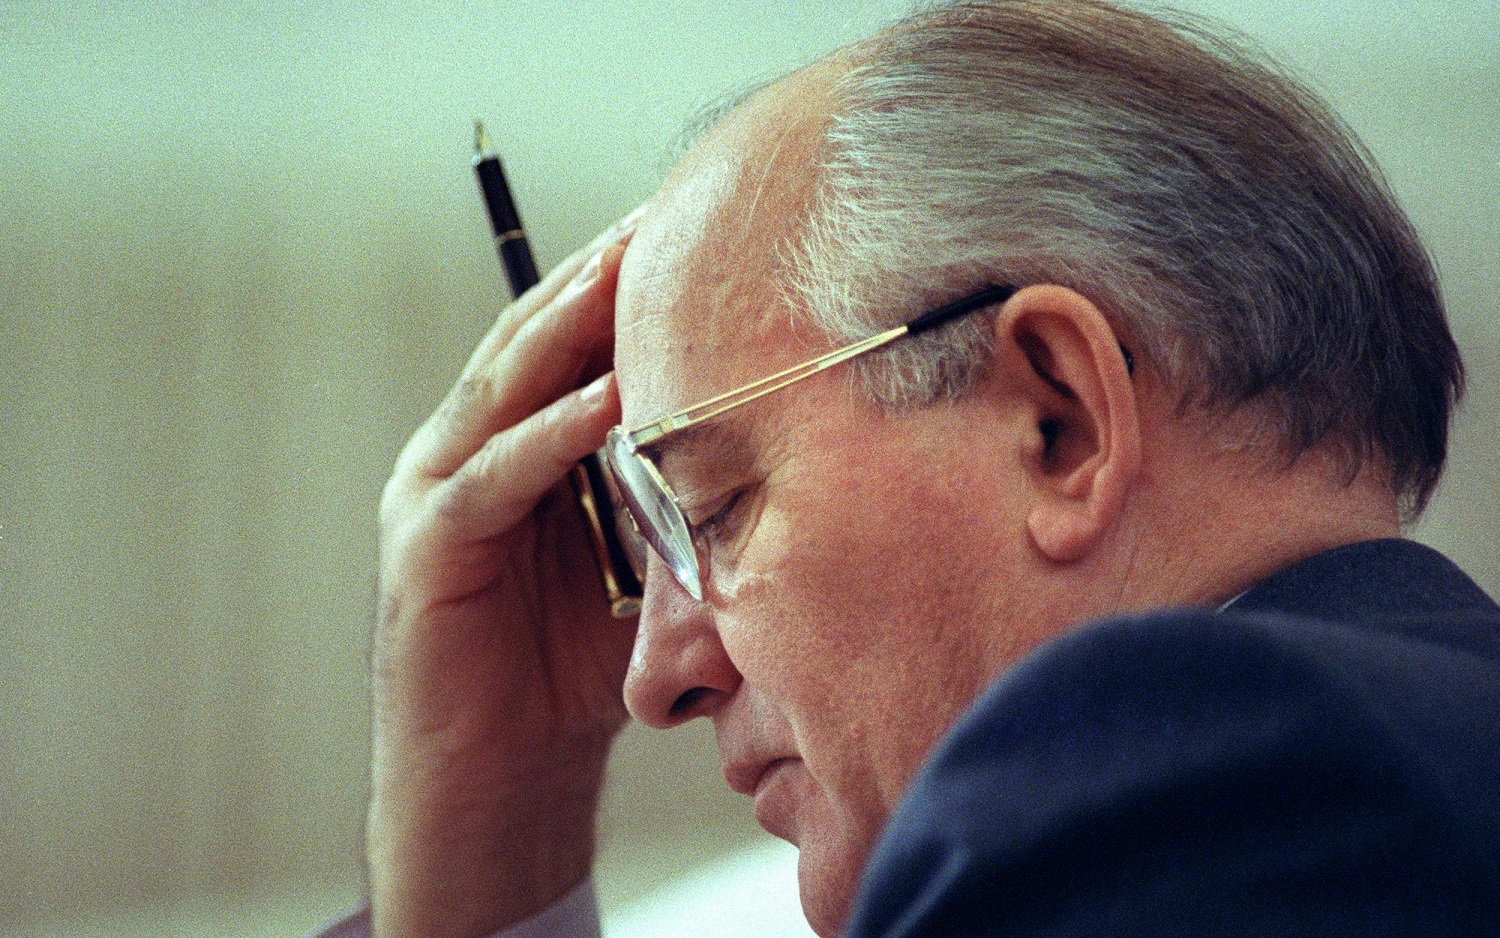 Умер Михаил Горбачев